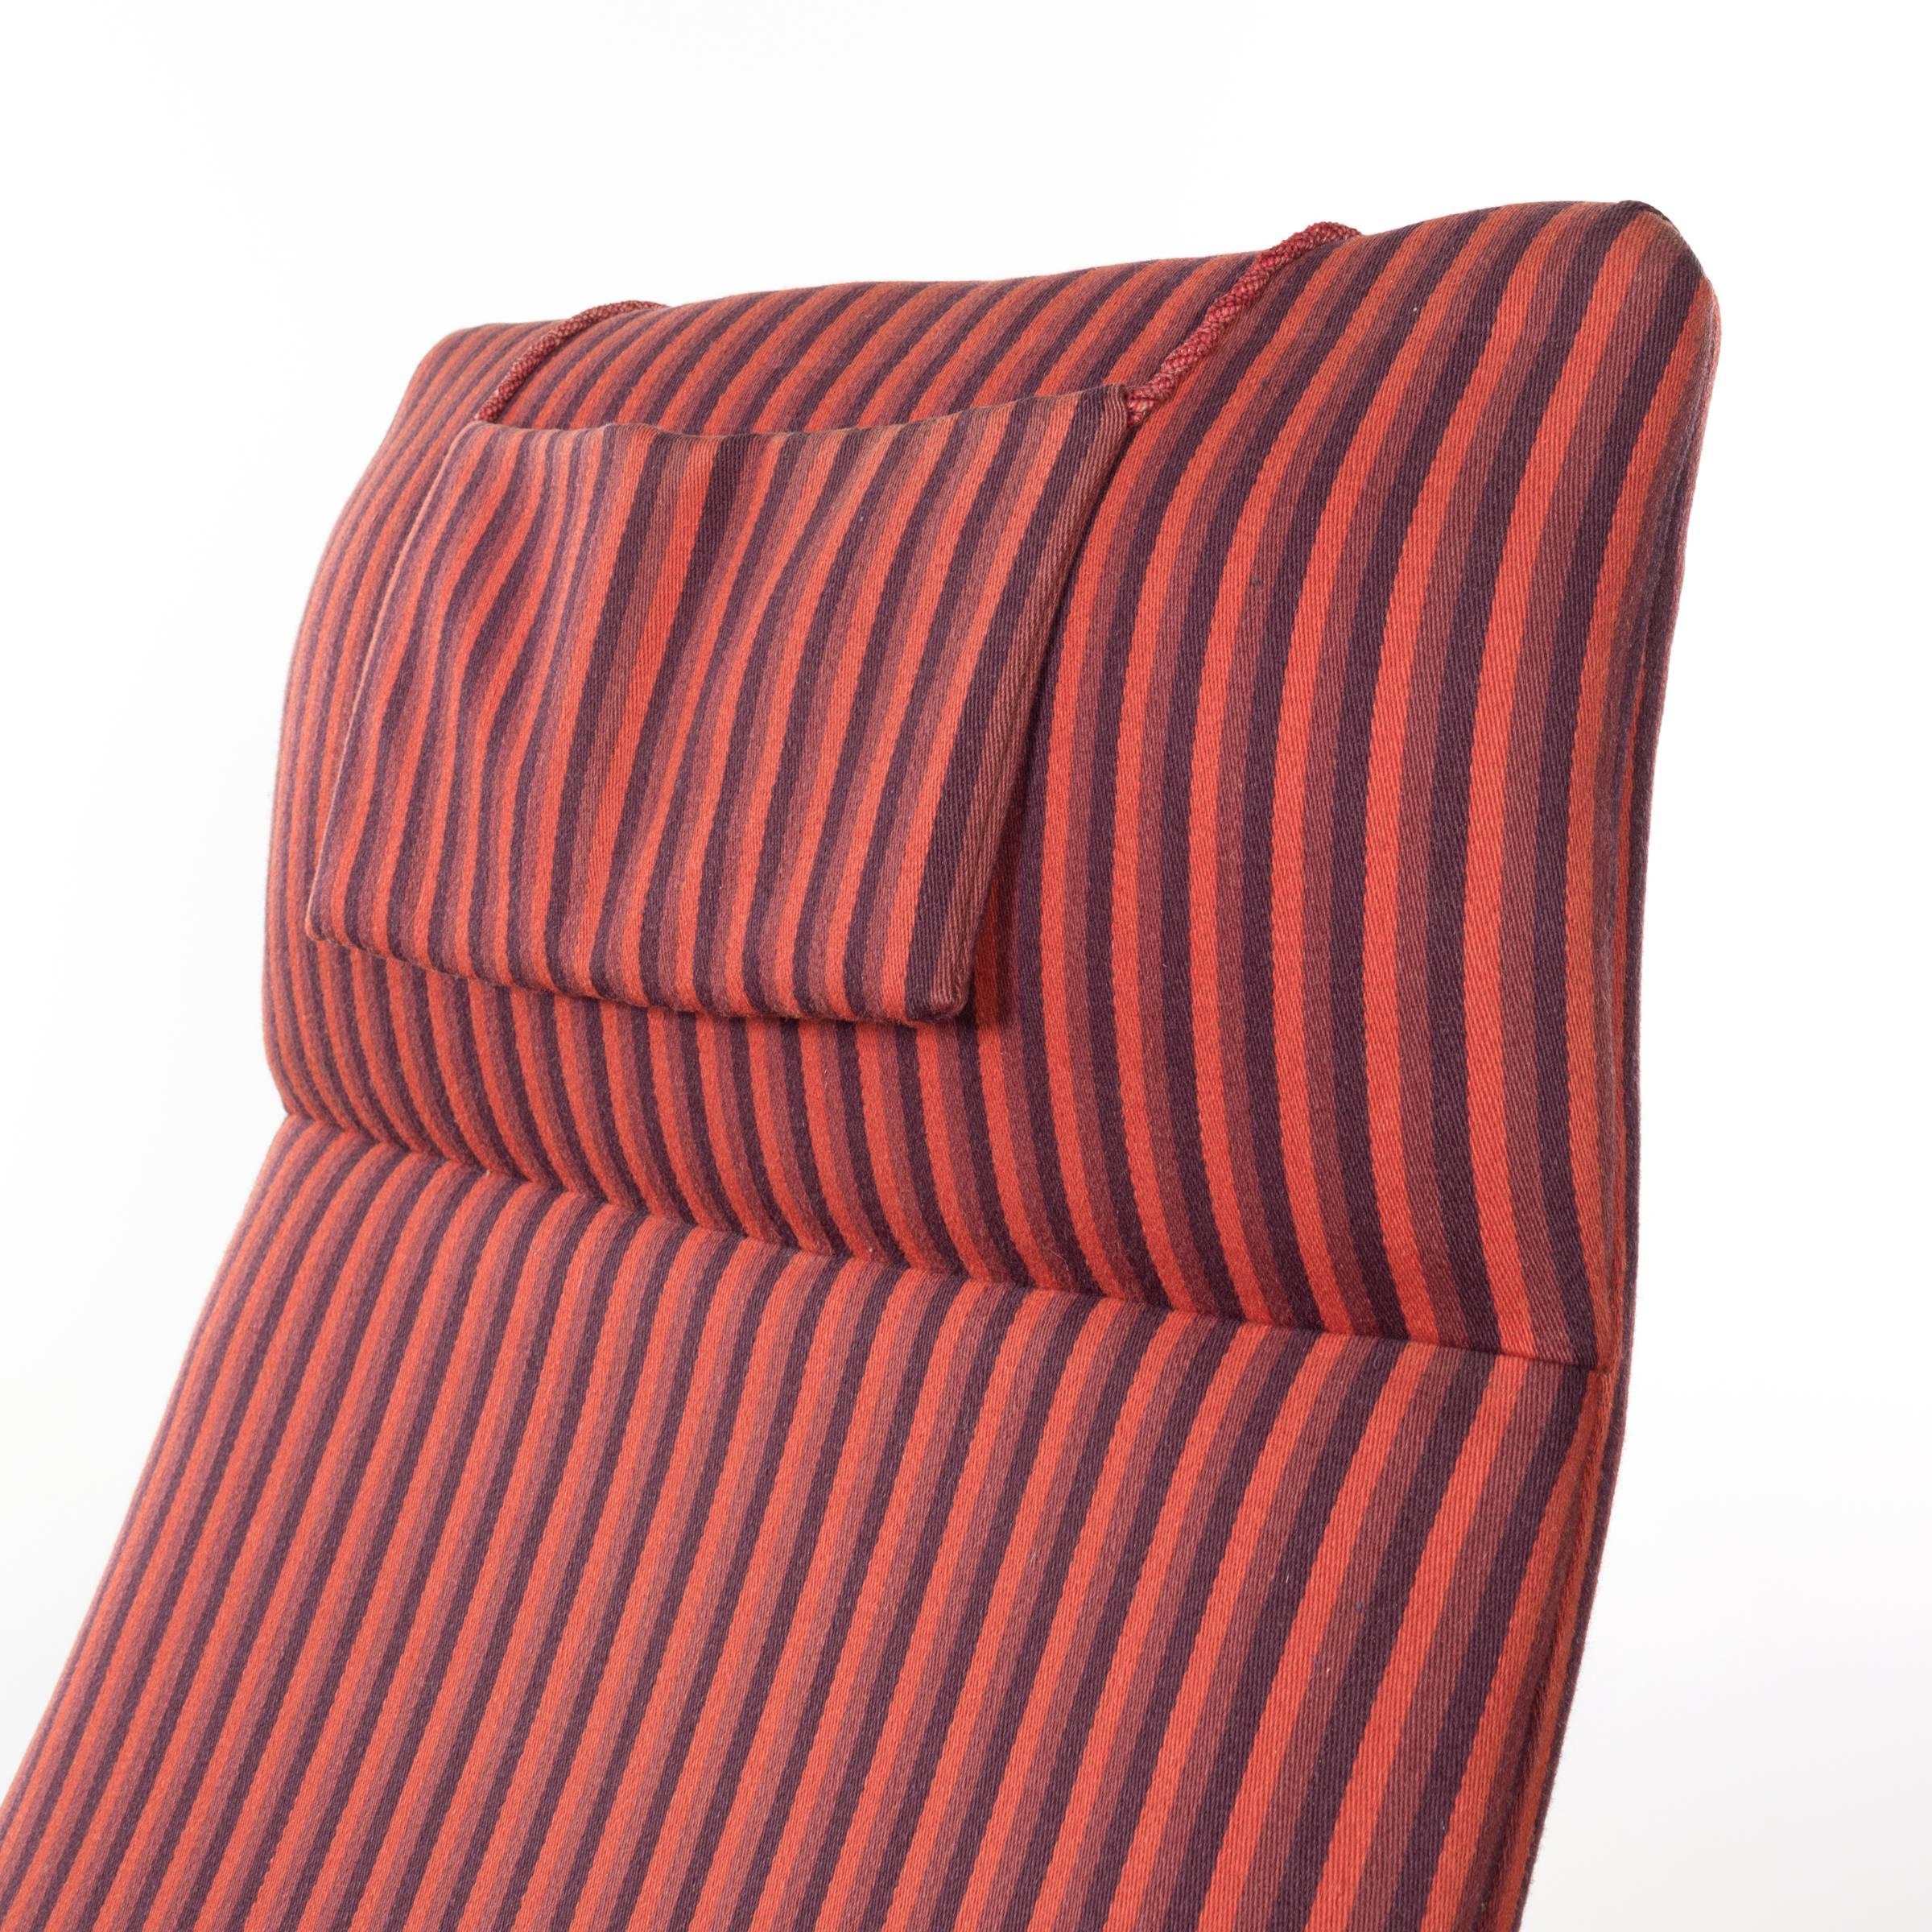 Illum Wikkelso Teak Lounge Chair Model 10H for Soren Willadsen, Denmark 1